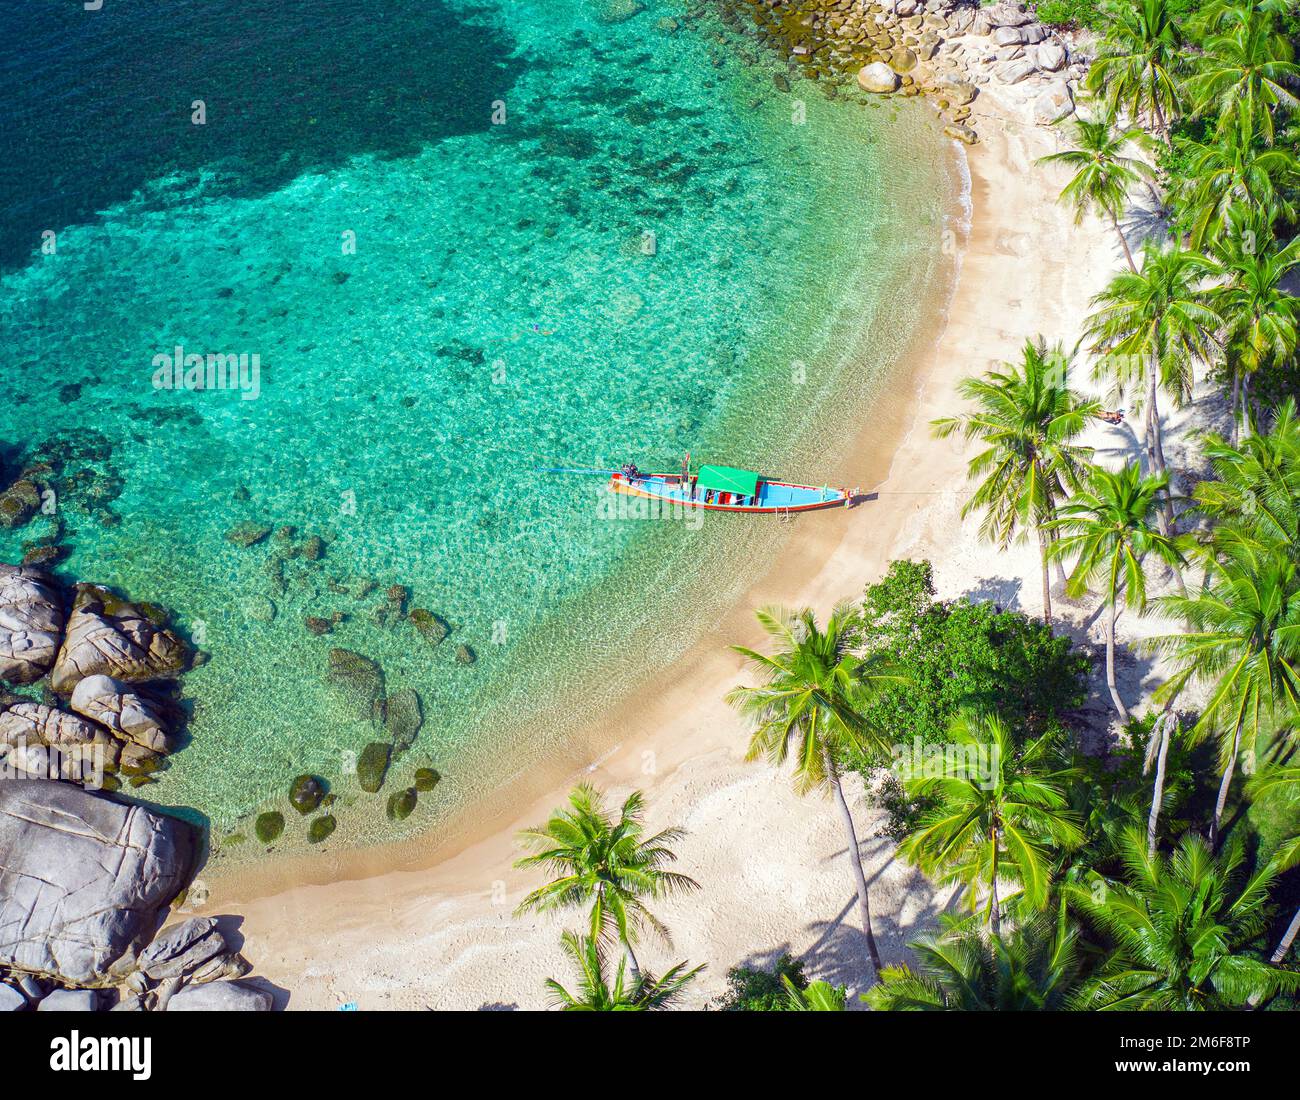 Aerial view tropical beach Sai Nuan Stock Photo